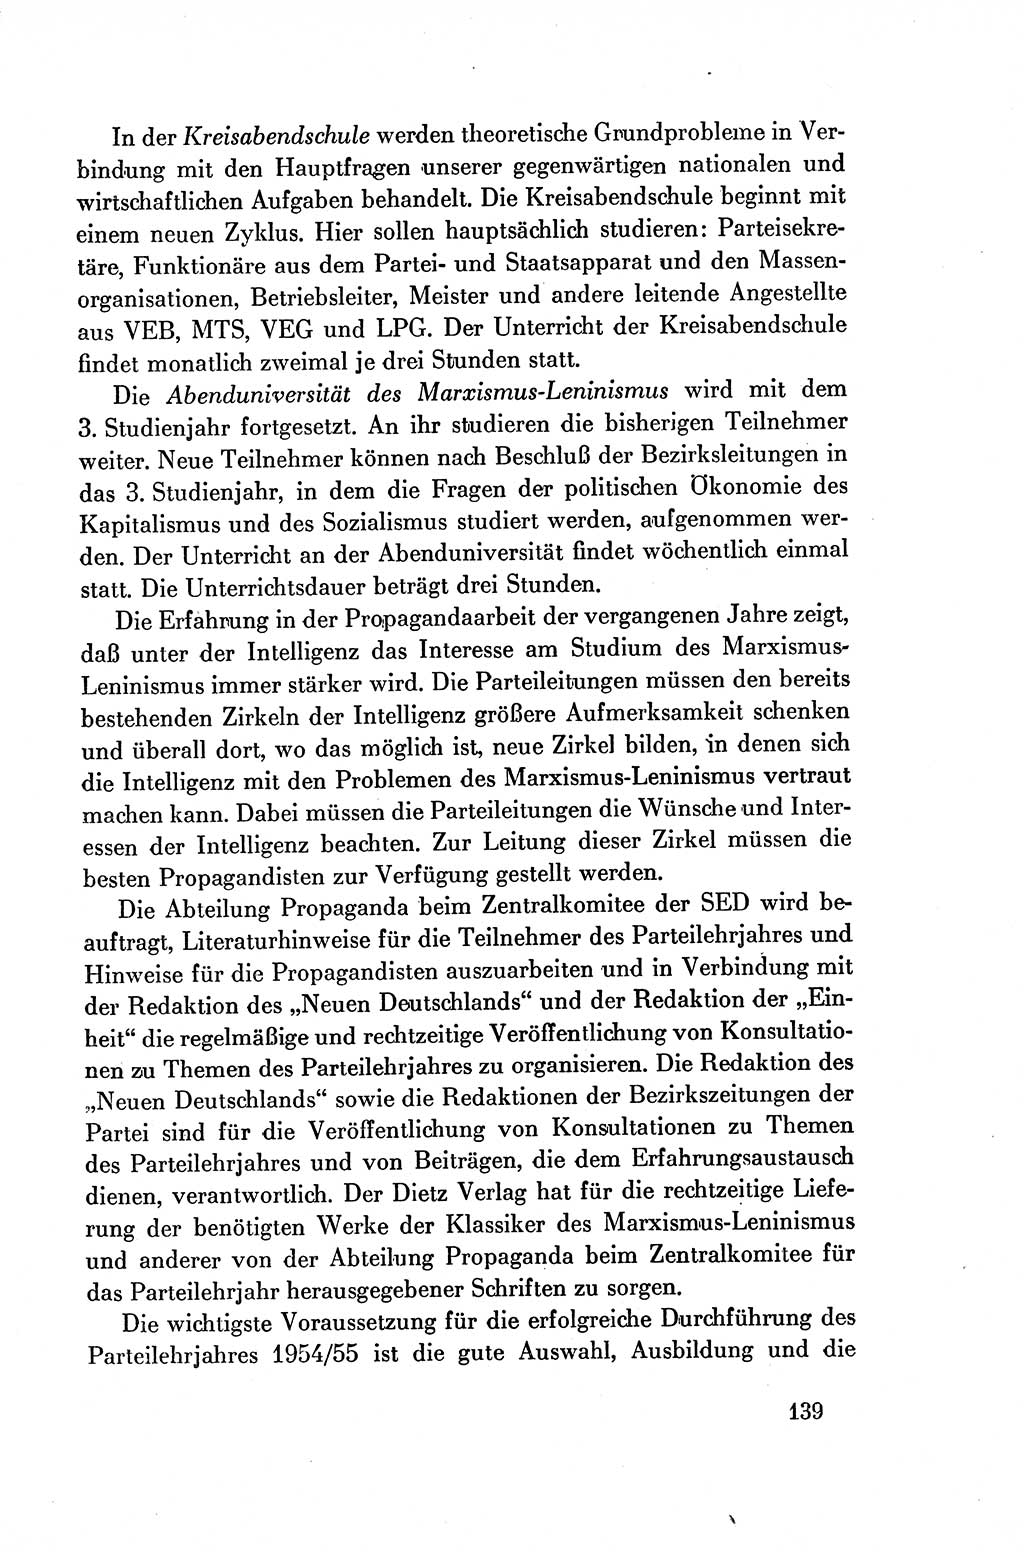 Dokumente der Sozialistischen Einheitspartei Deutschlands (SED) [Deutsche Demokratische Republik (DDR)] 1954-1955, Seite 139 (Dok. SED DDR 1954-1955, S. 139)